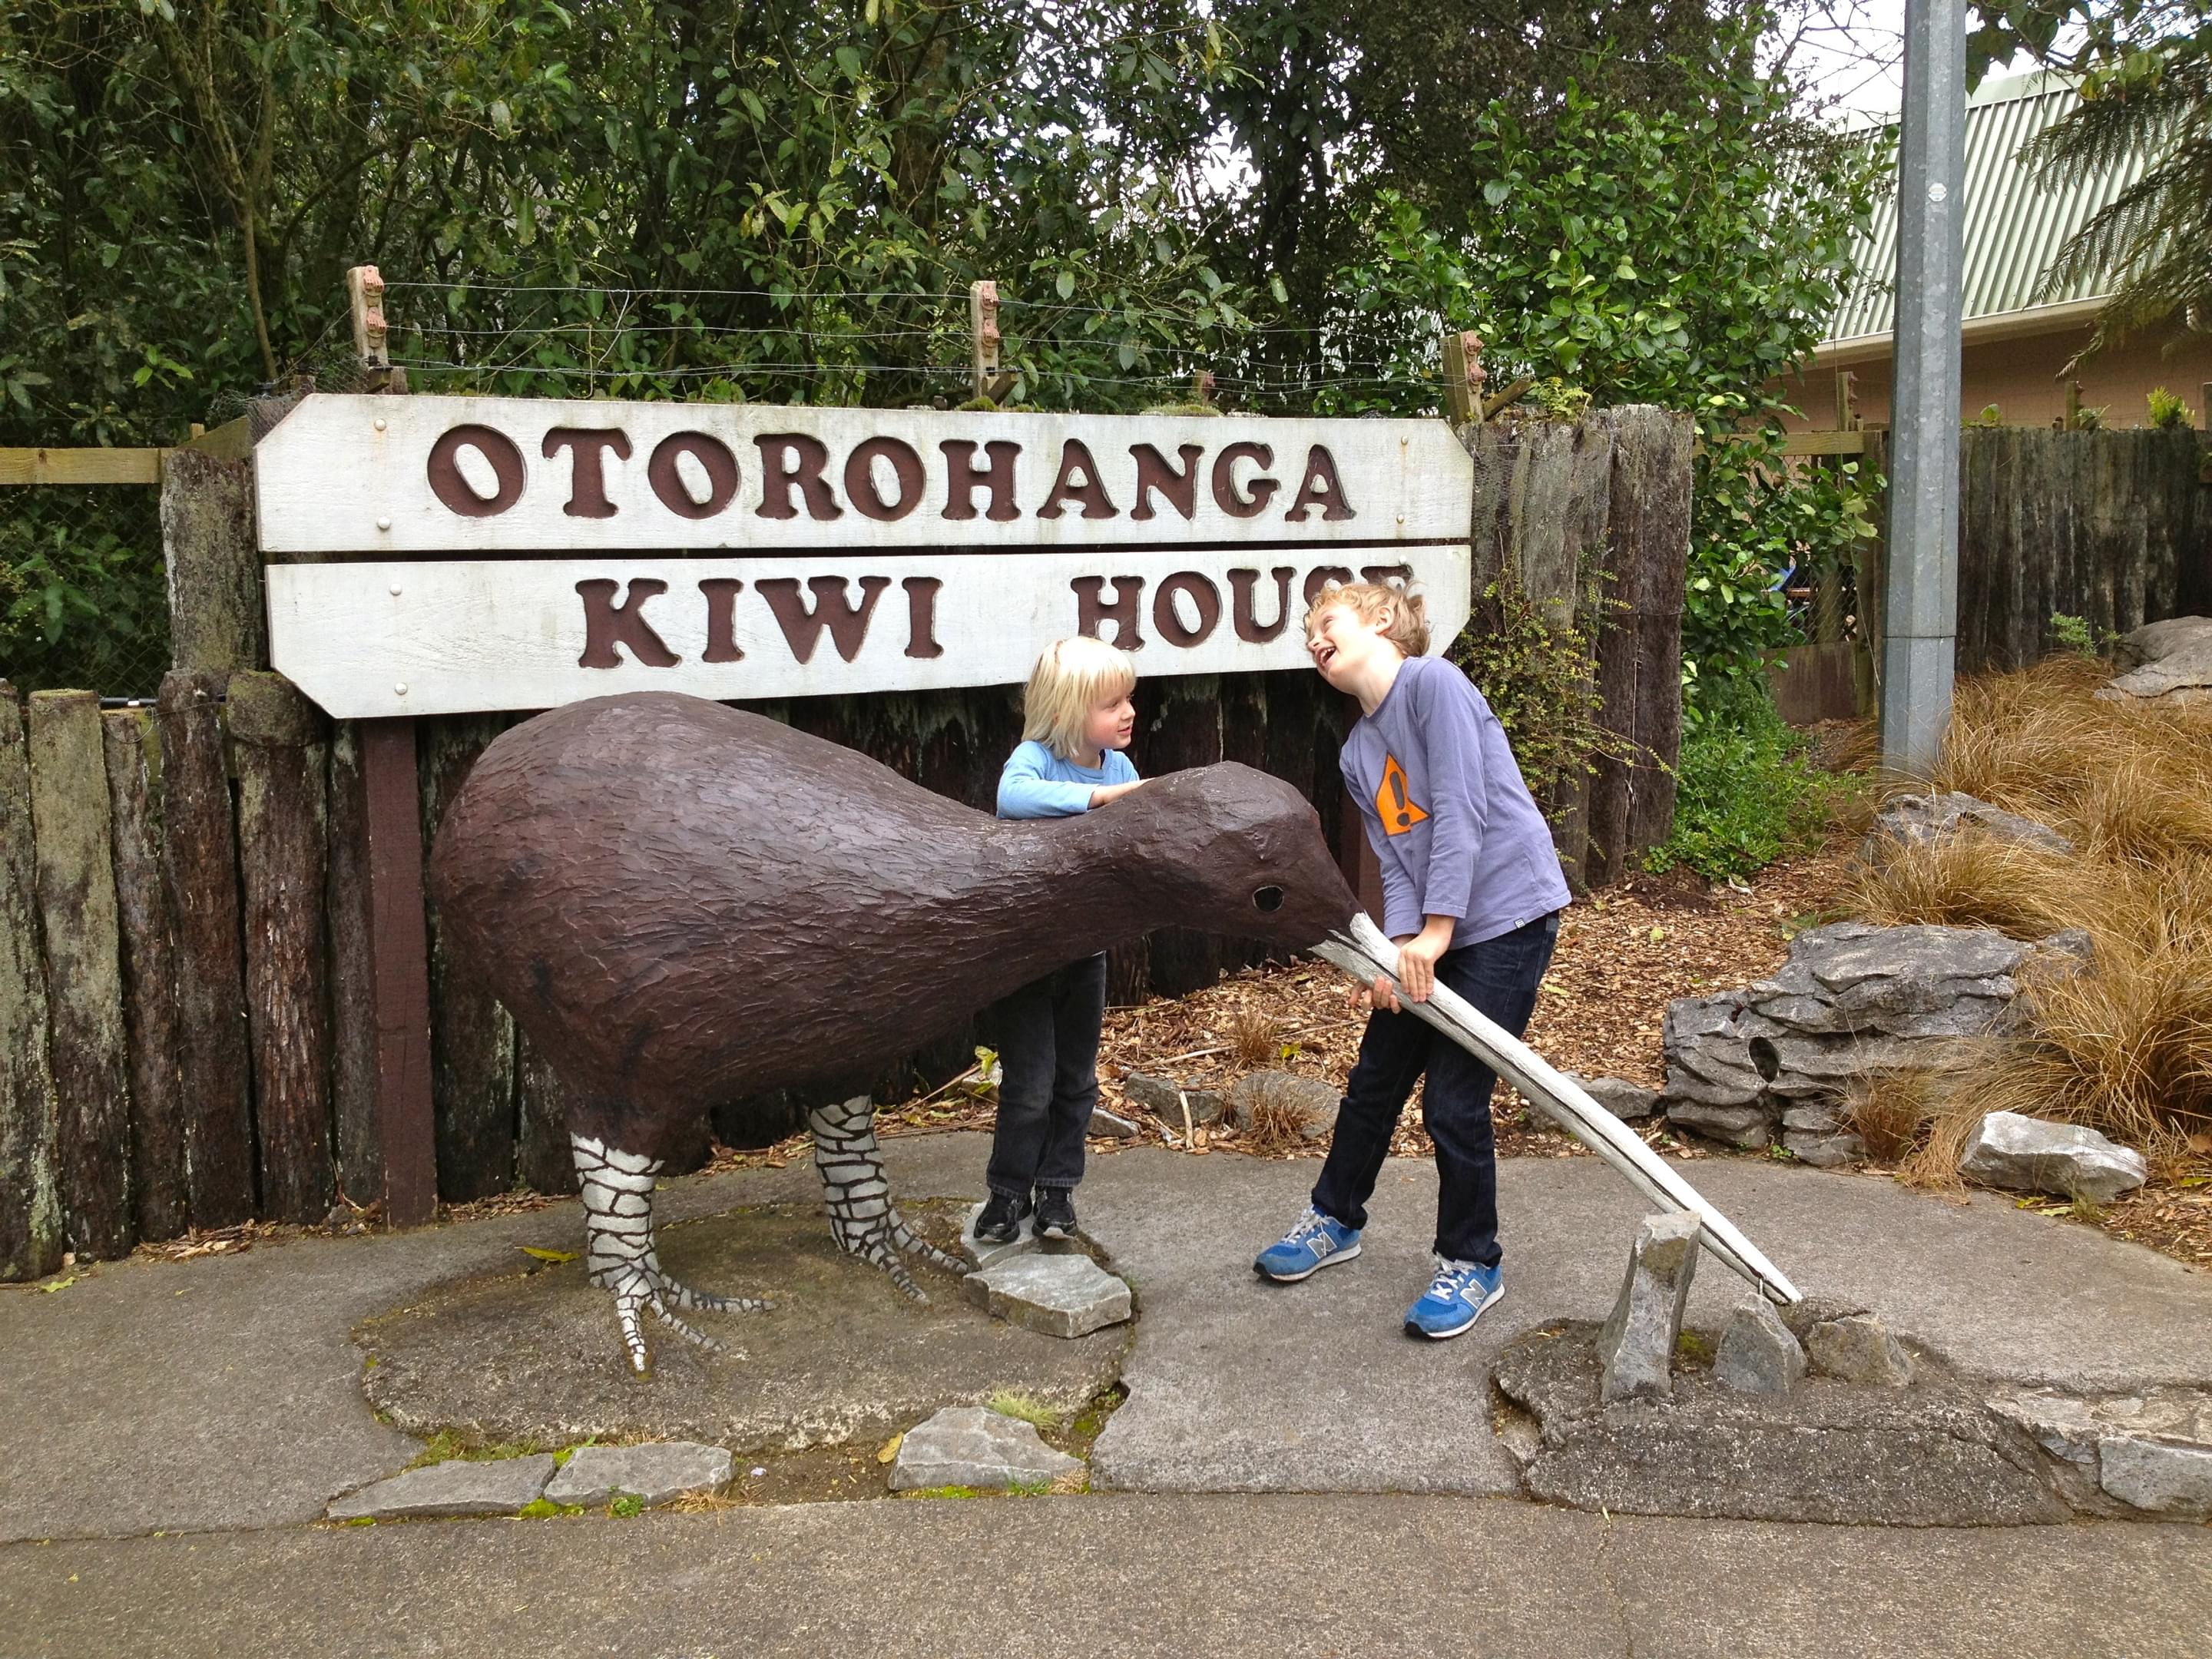 Otorohanga Kiwi House Overview